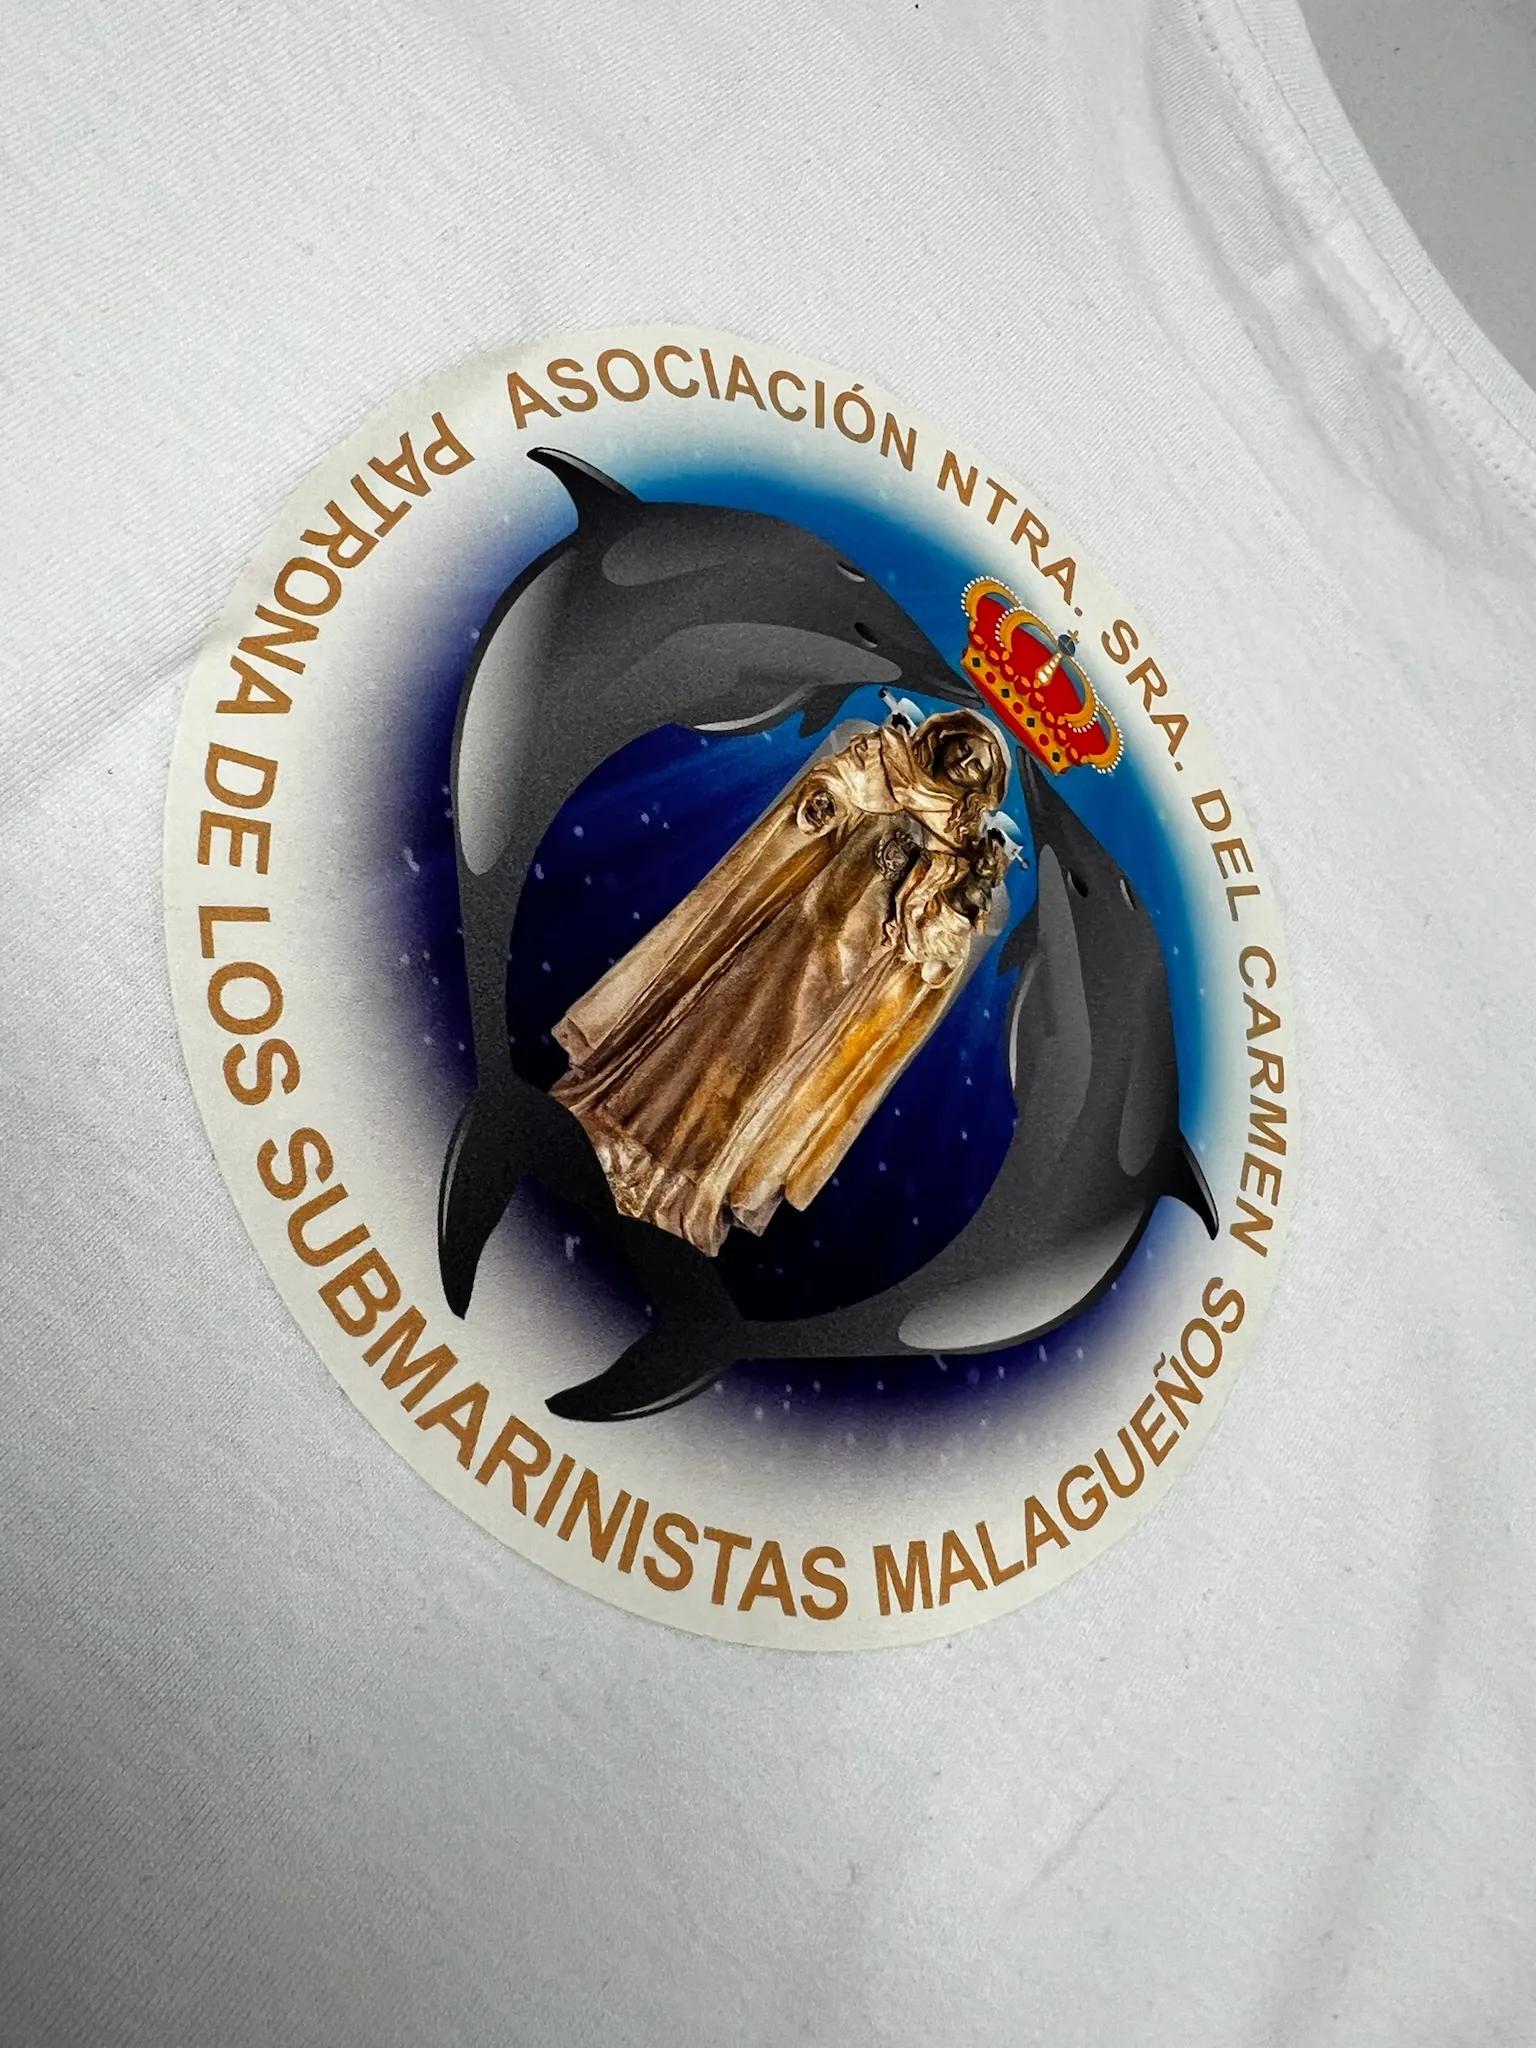 Camiseta blanca asociación virgen del carmen de los submarinistas.JPG